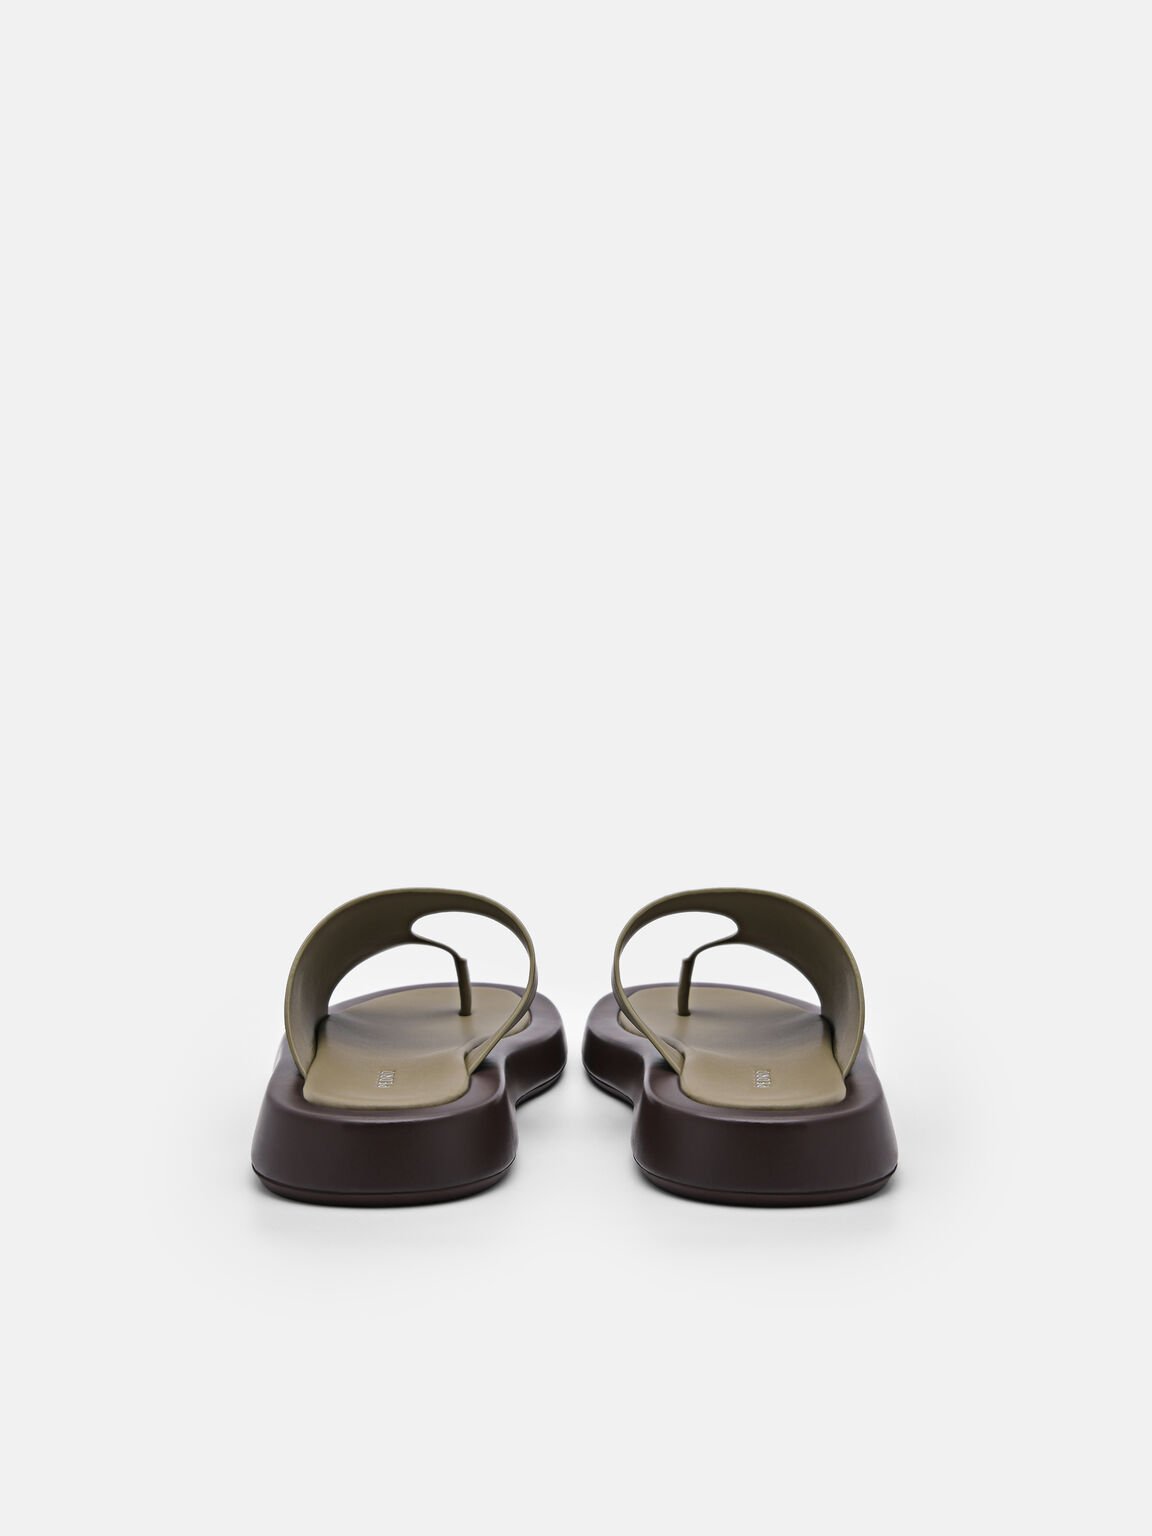 Olive Este Thong Sandals - PEDRO SG